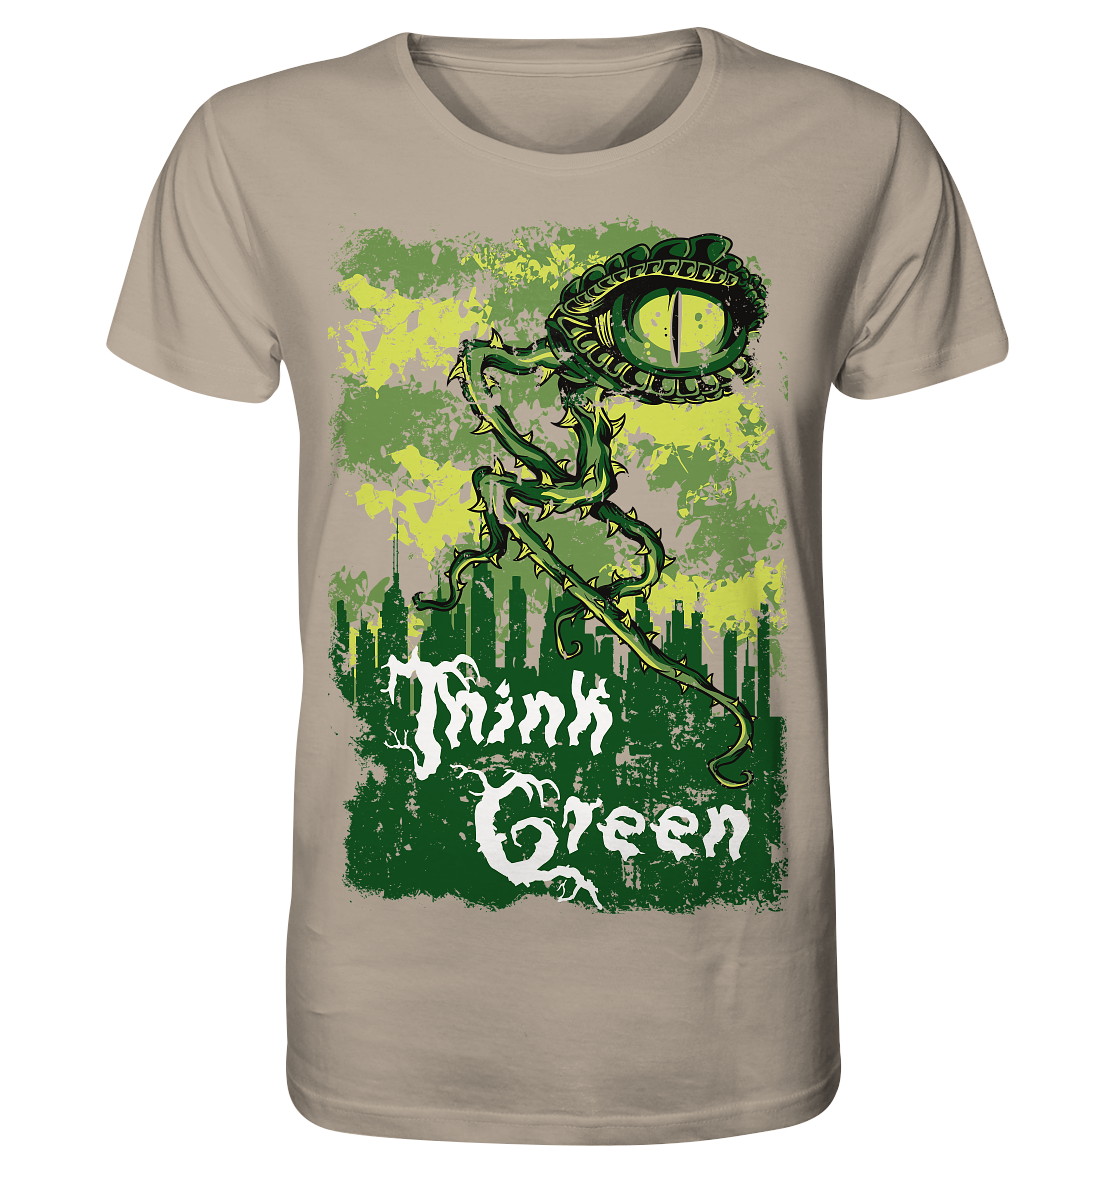 Think Green - Organic Shirt